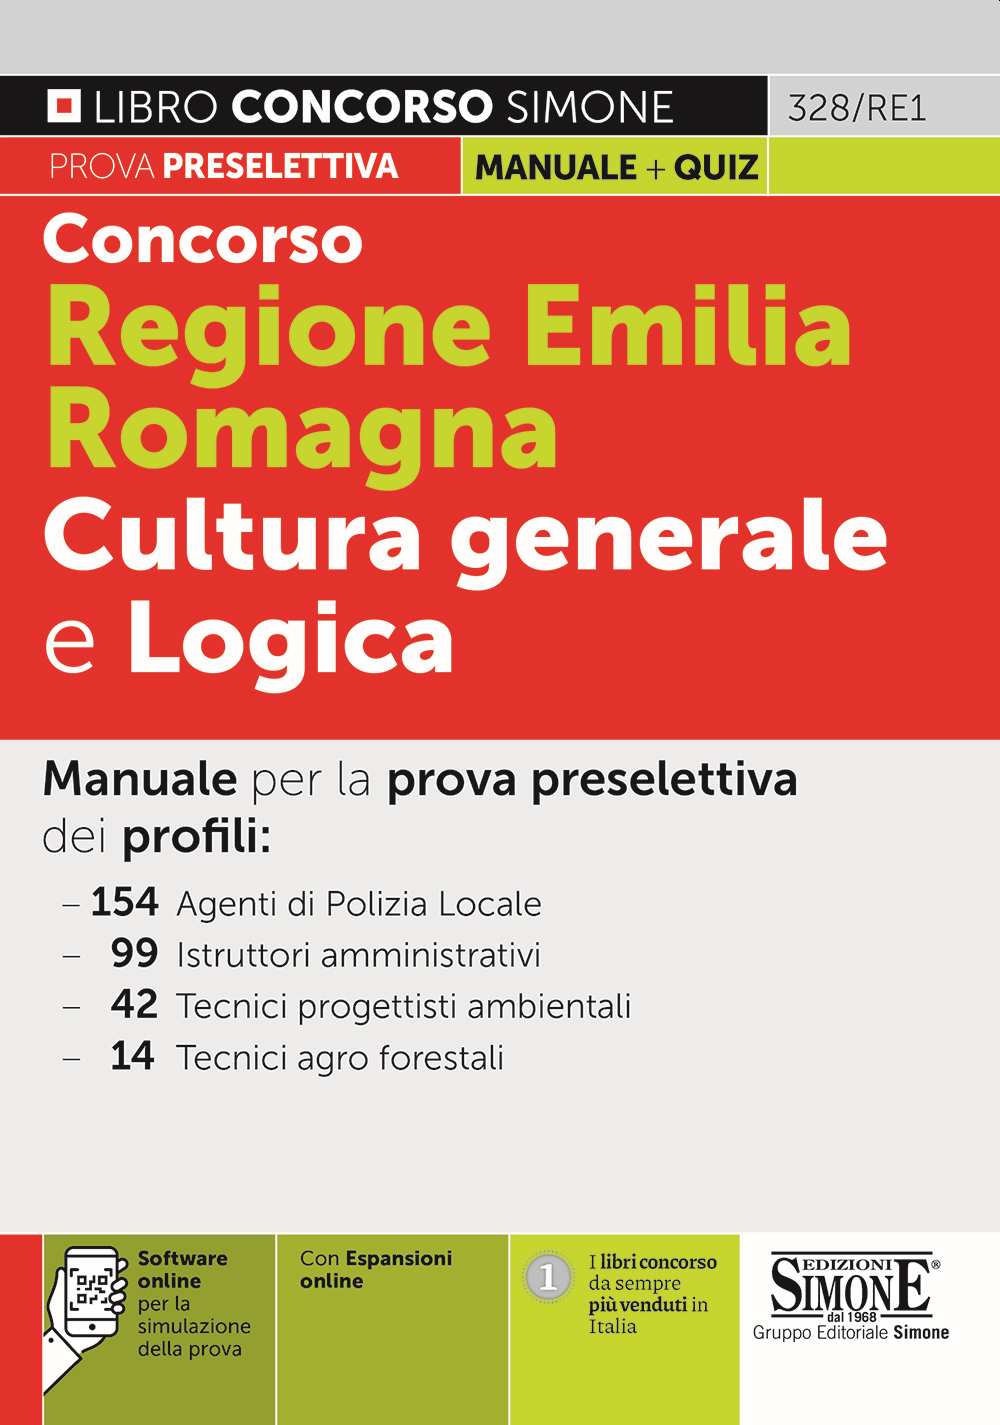 Concorso Regione Emilia Romagna Cultura generale e Logica - 328/RE1